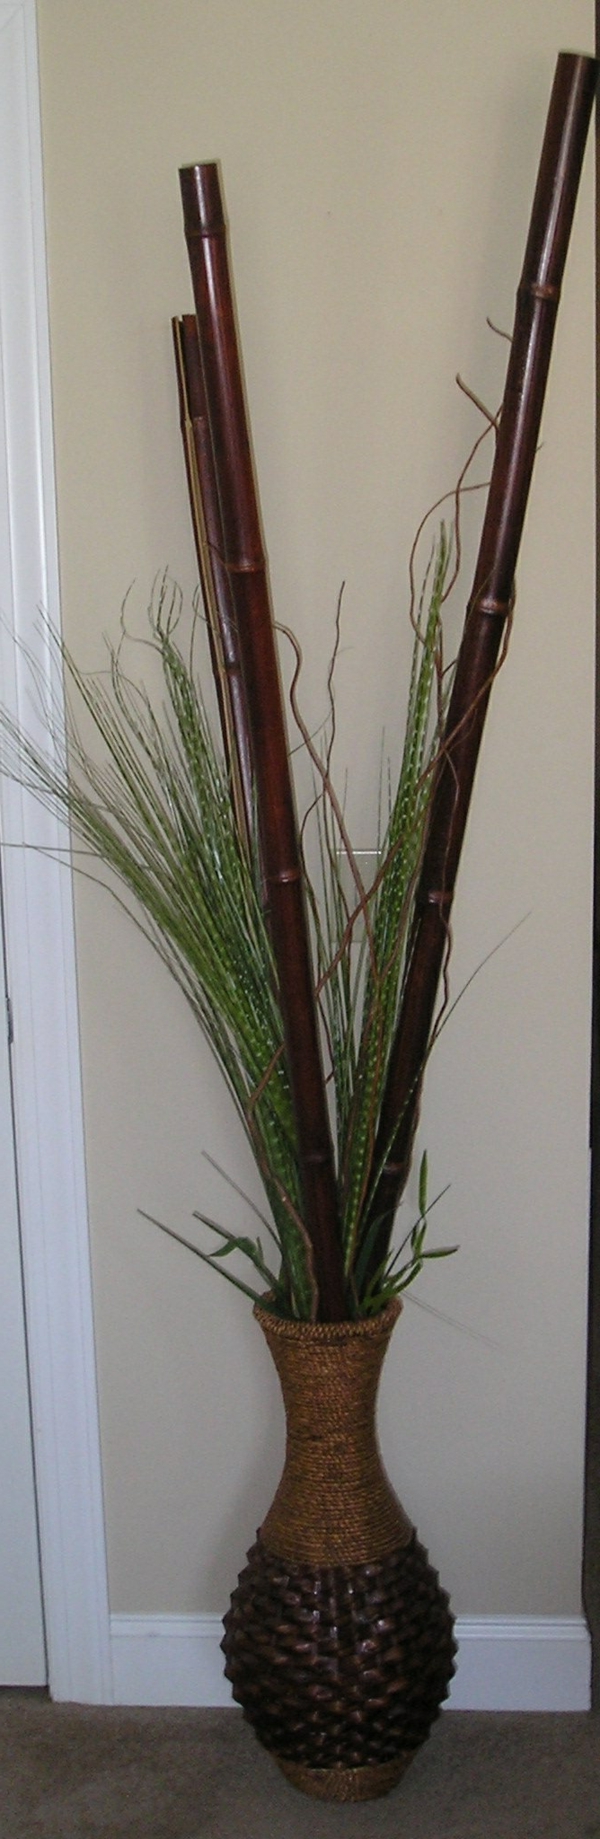 schönes-modell-bambus-vase